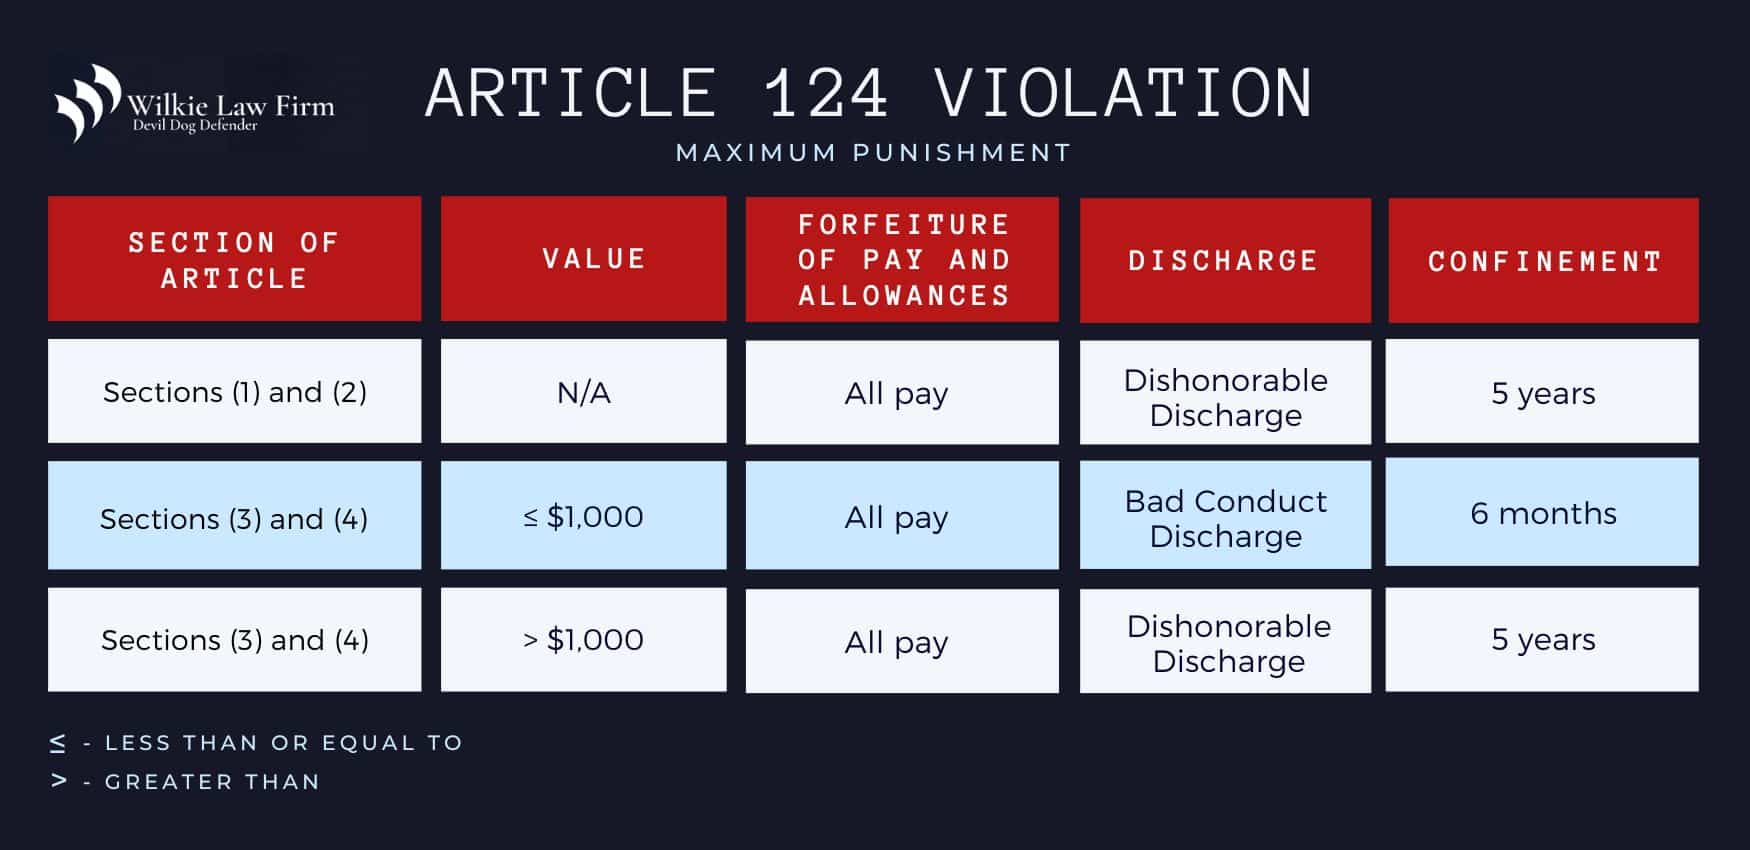 Article 124 violations maximum punishment